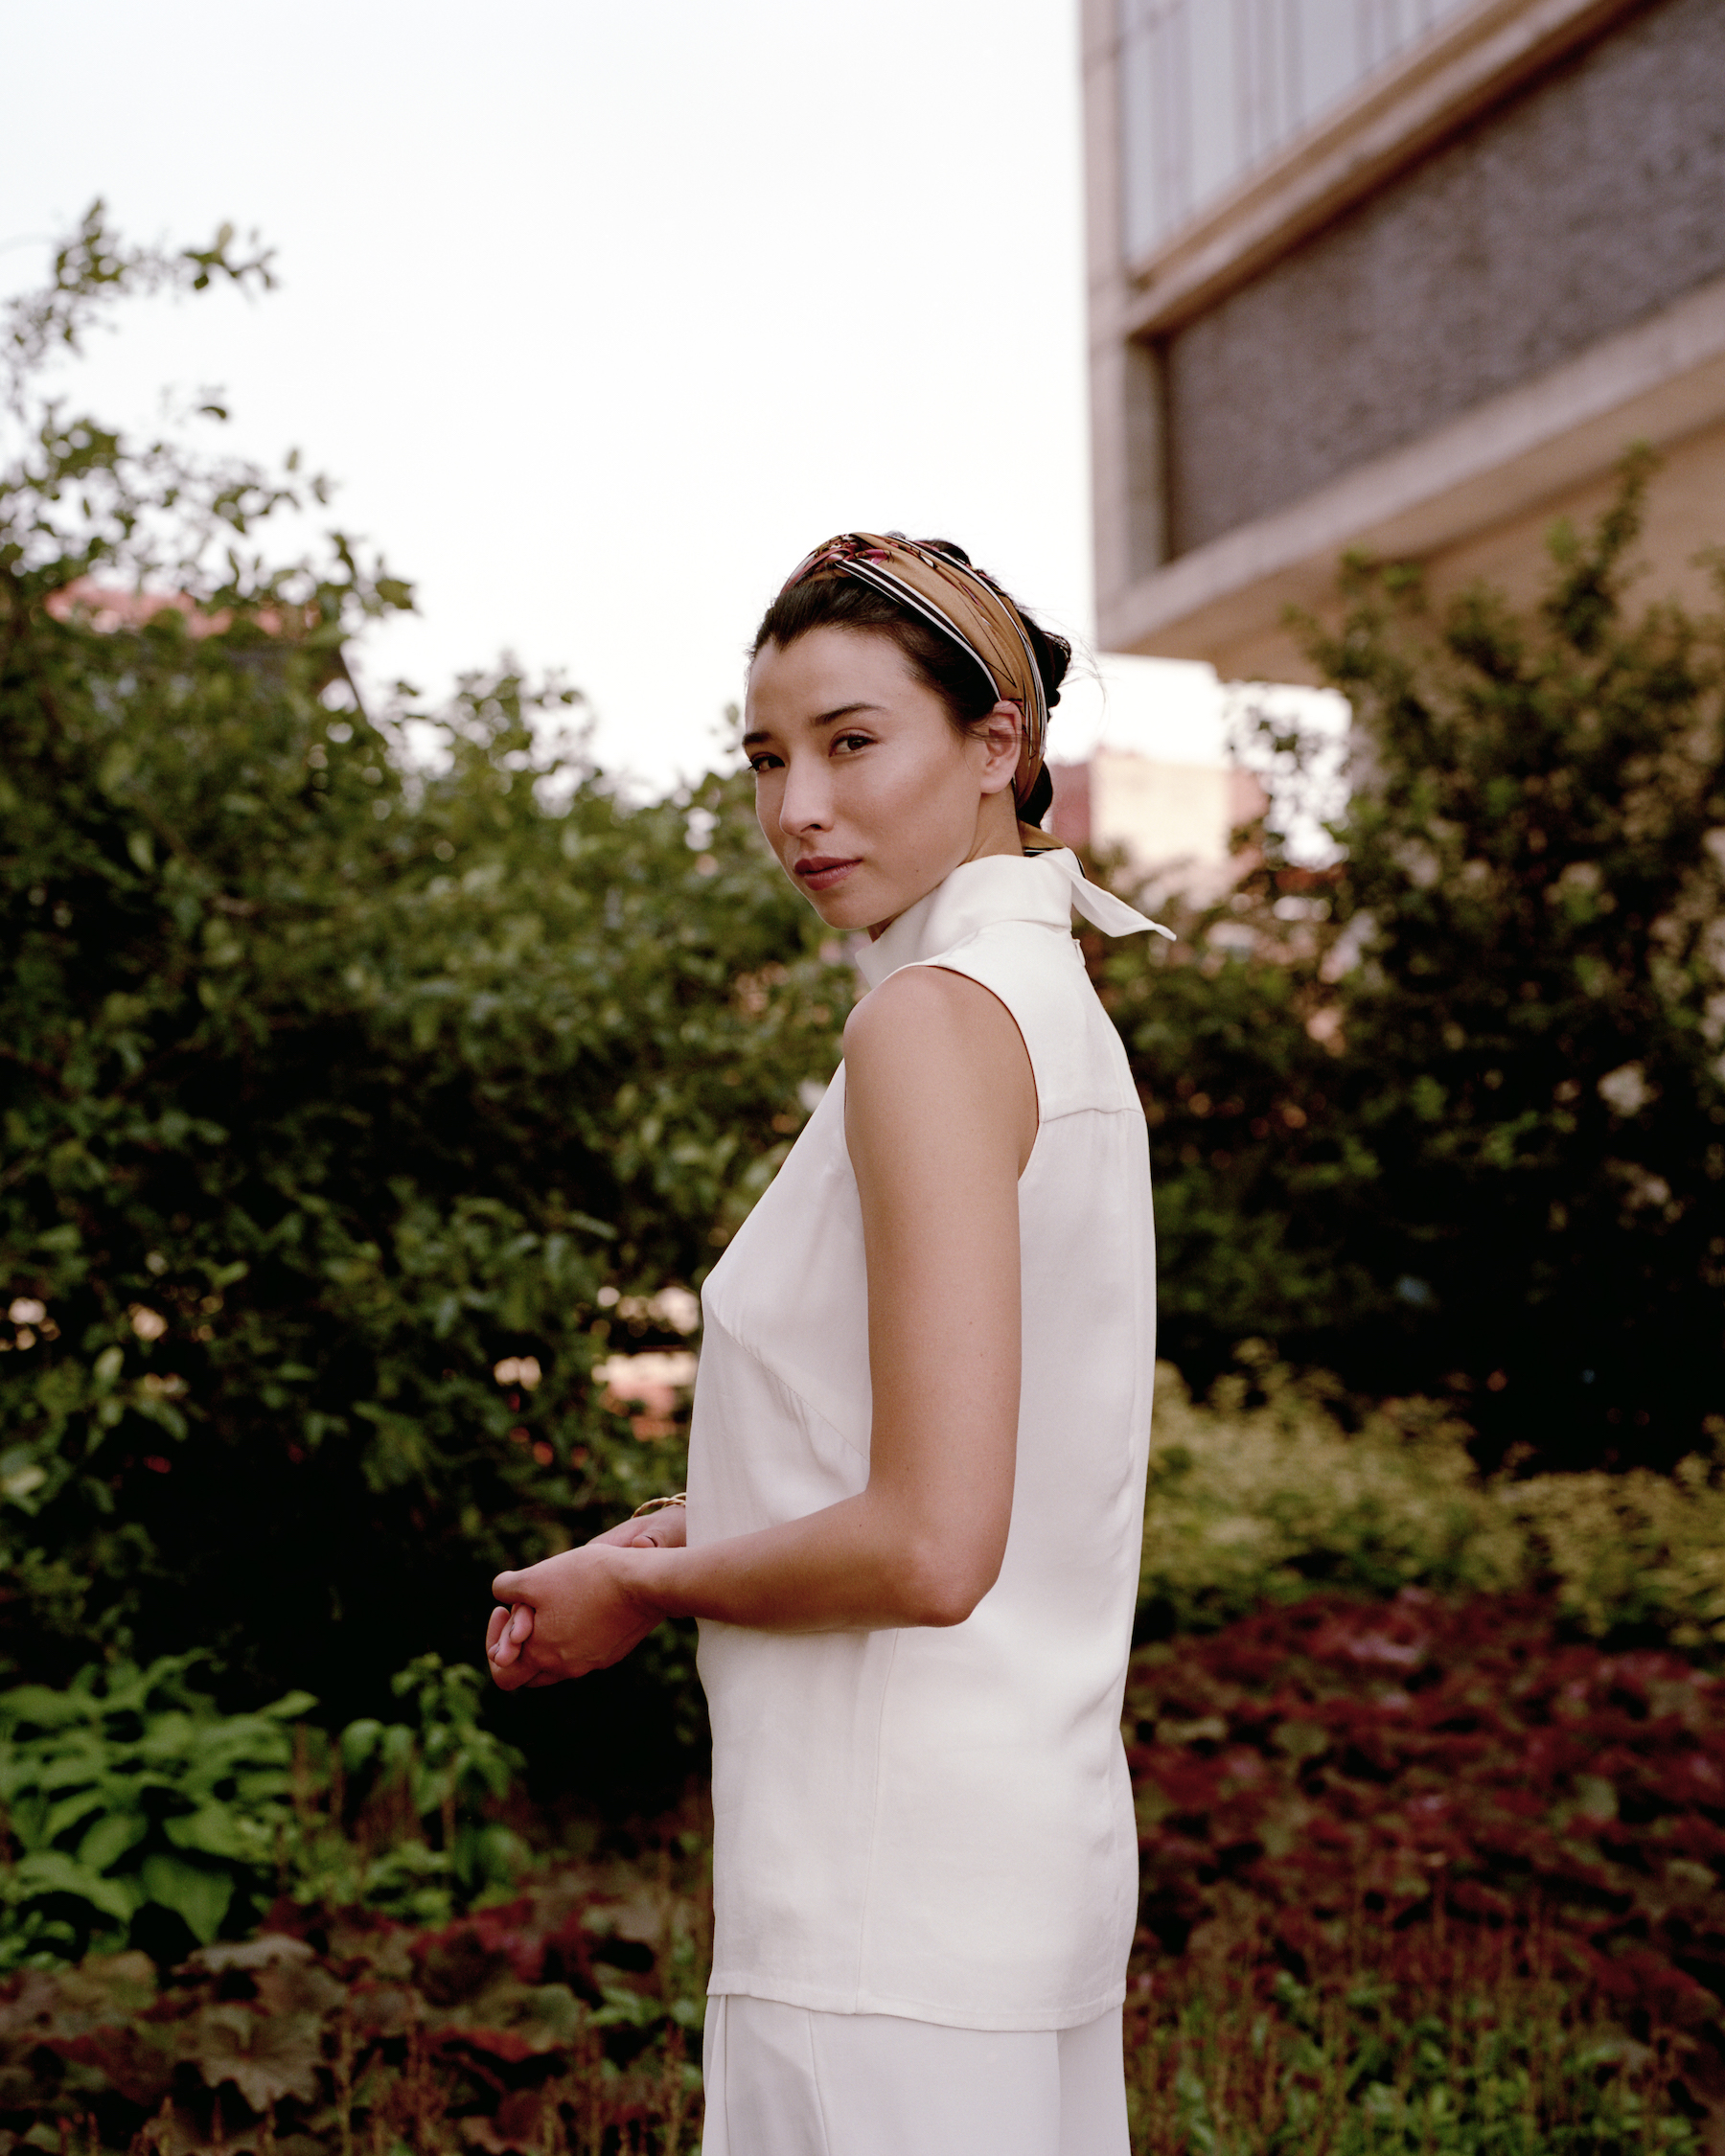 Lily Kwong, Landscape designer